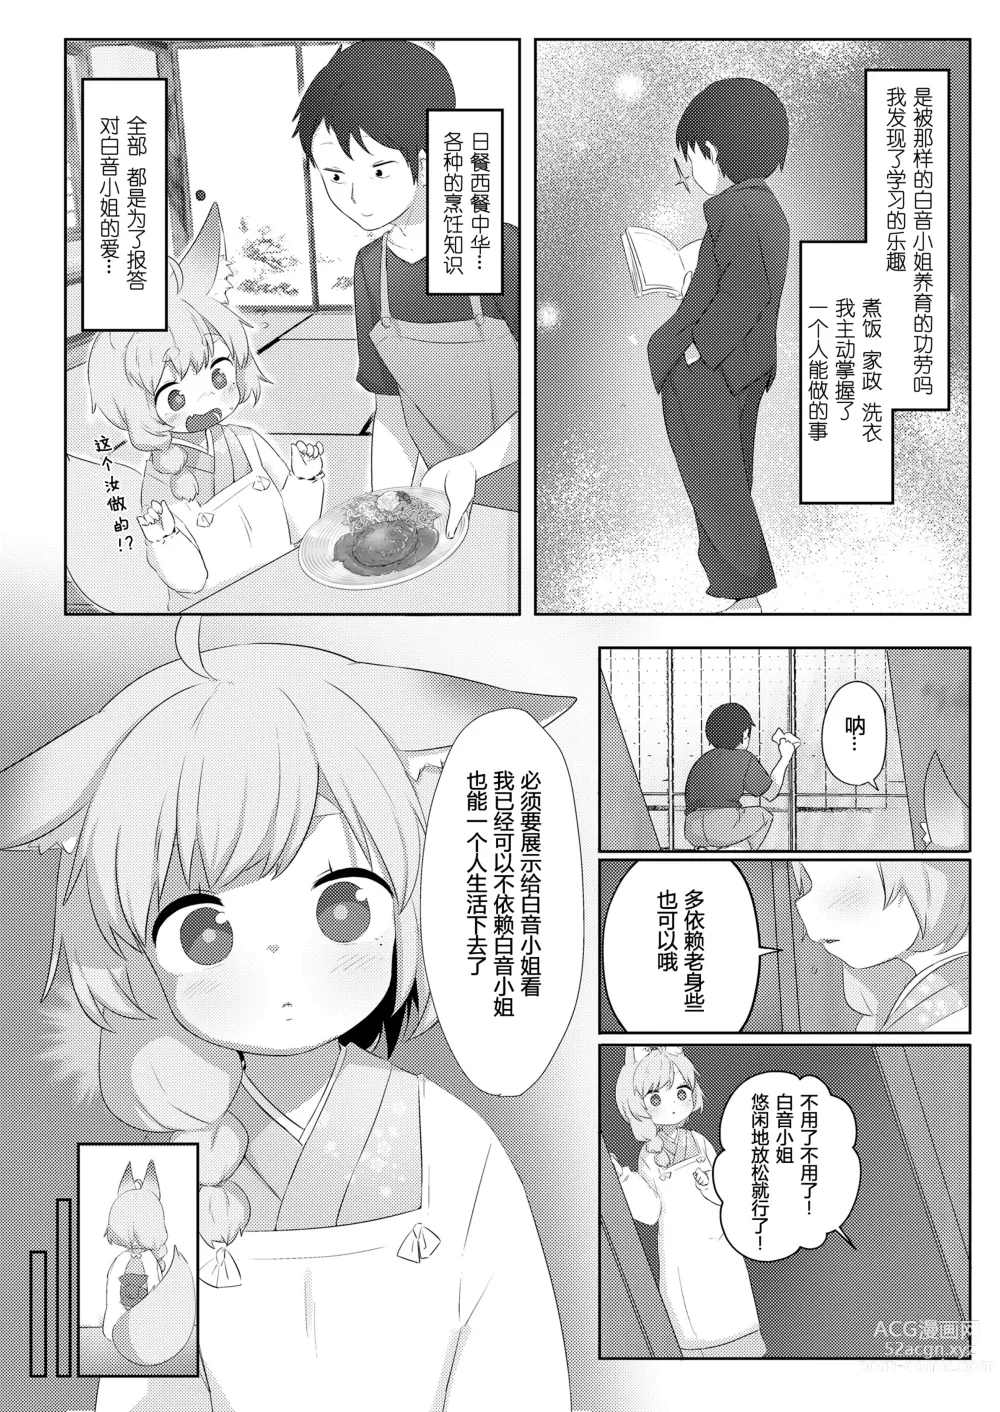 Page 3 of manga 本音·白音